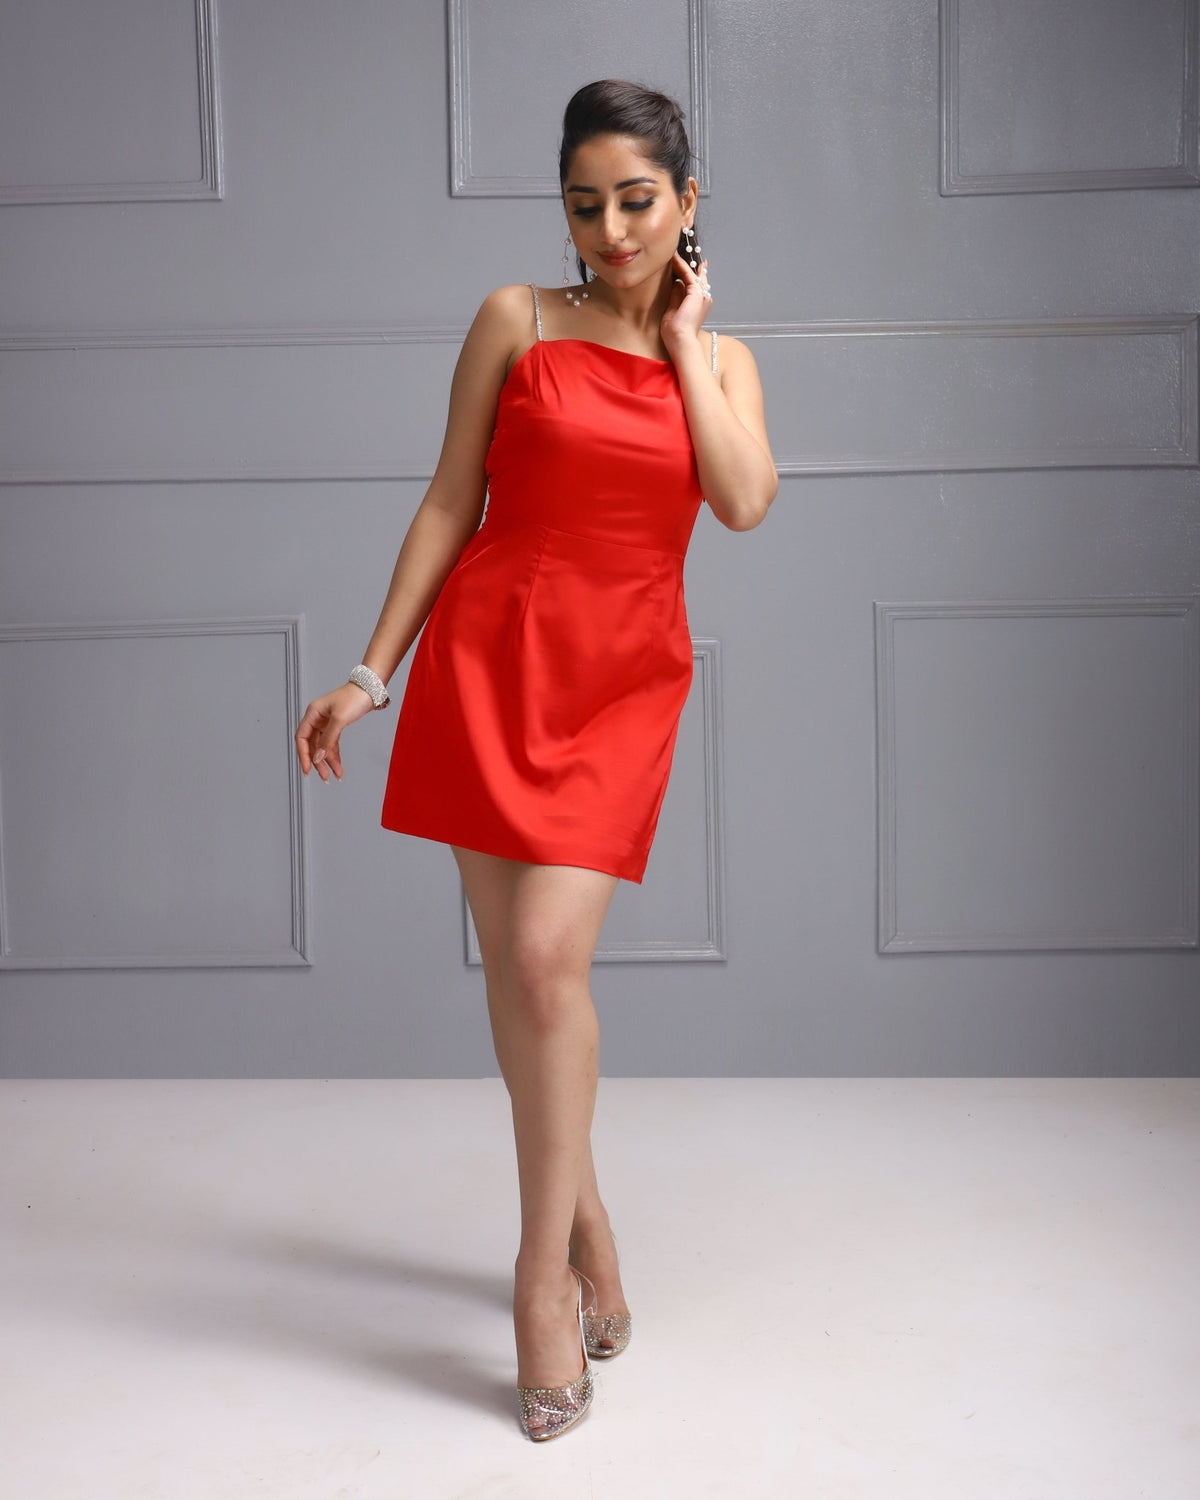 Elegant Red Dress, House Of Majisha Satin Dress, Women's Fashion, Luxury Women's Clothing, Stylish Female Attire,